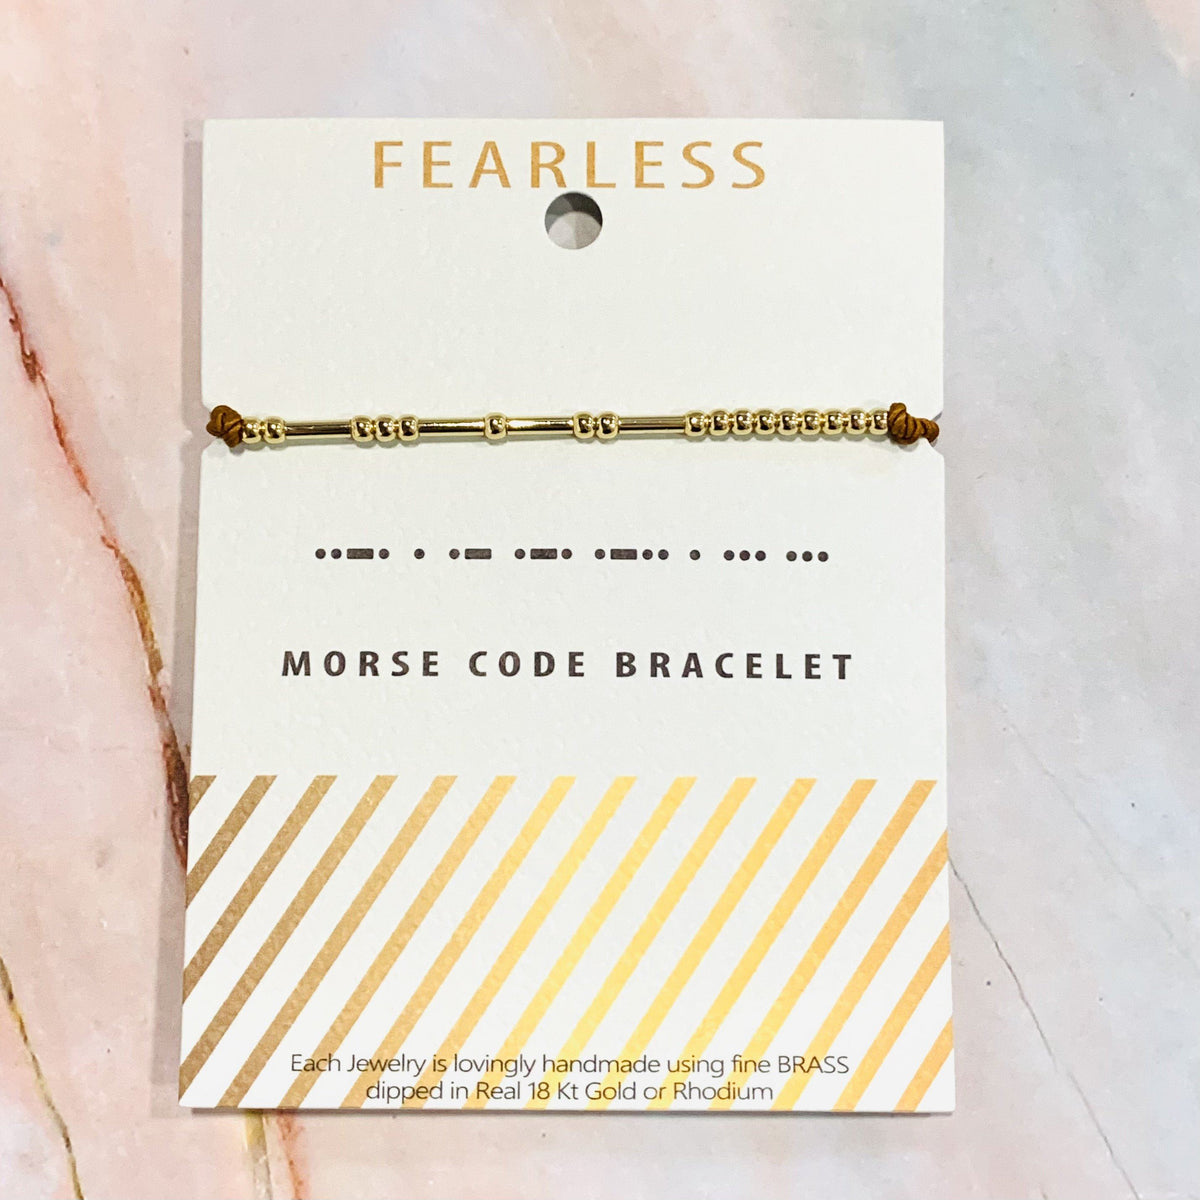 Morse Code Bracelet Lauren-Spencer Fearless 